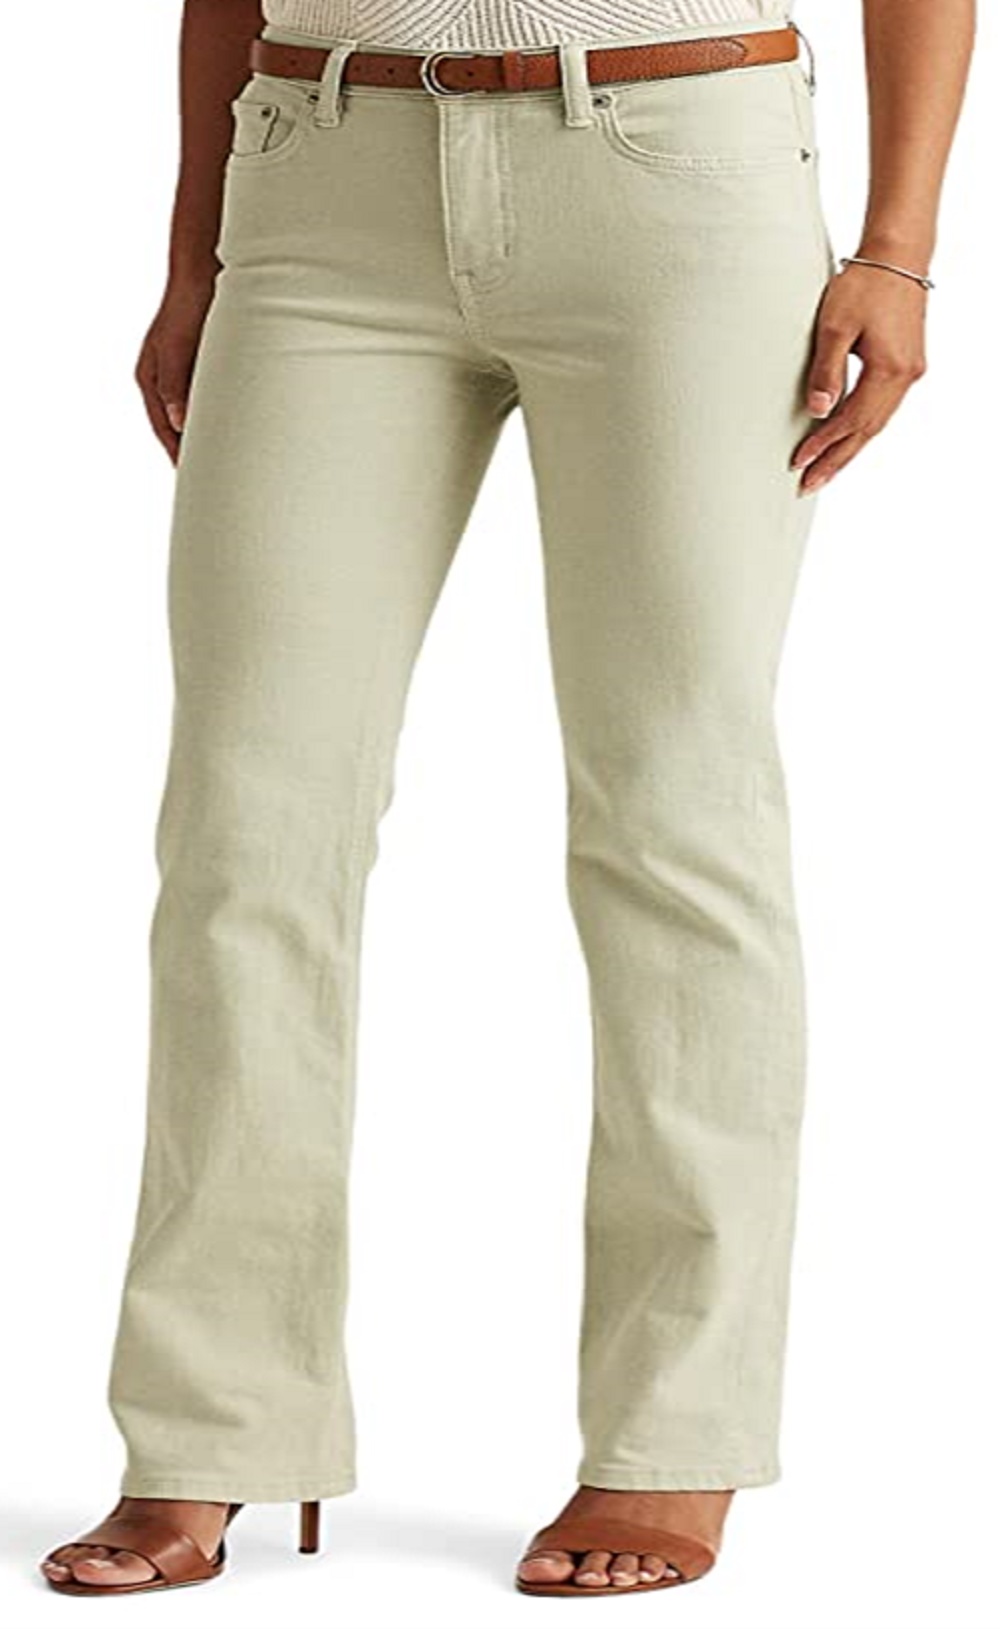 Ralph Lauren Women's High Rise Boot Jeans Green Size 14